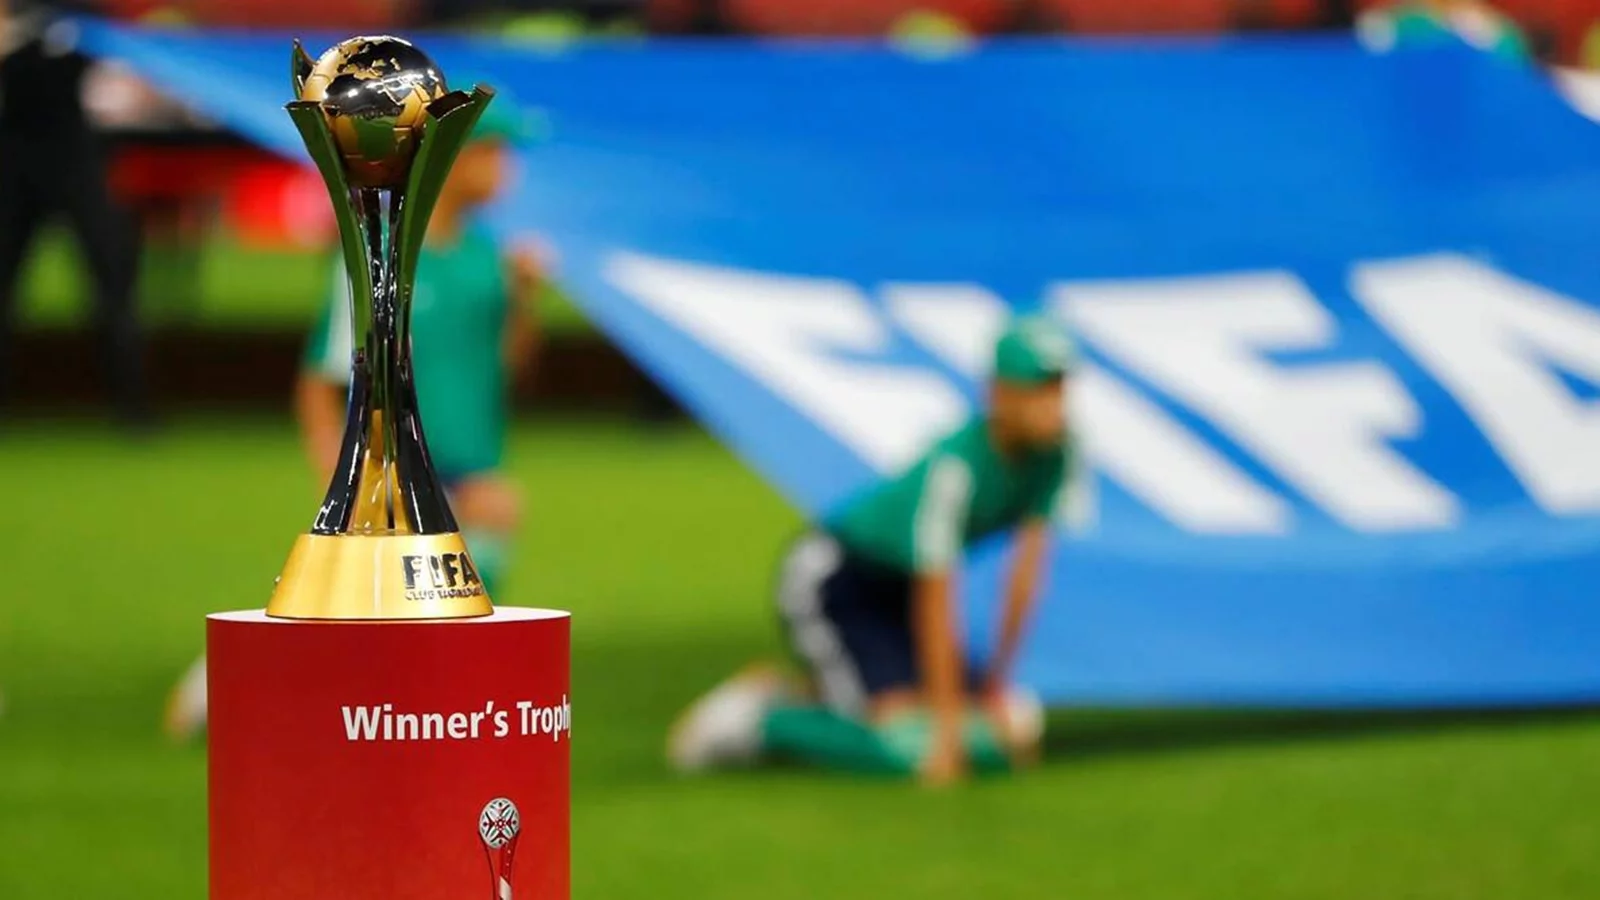  رسمياً: اليابان تعتذر عن استضافة كأس العالم للأندية 2021 بسبب كورونا